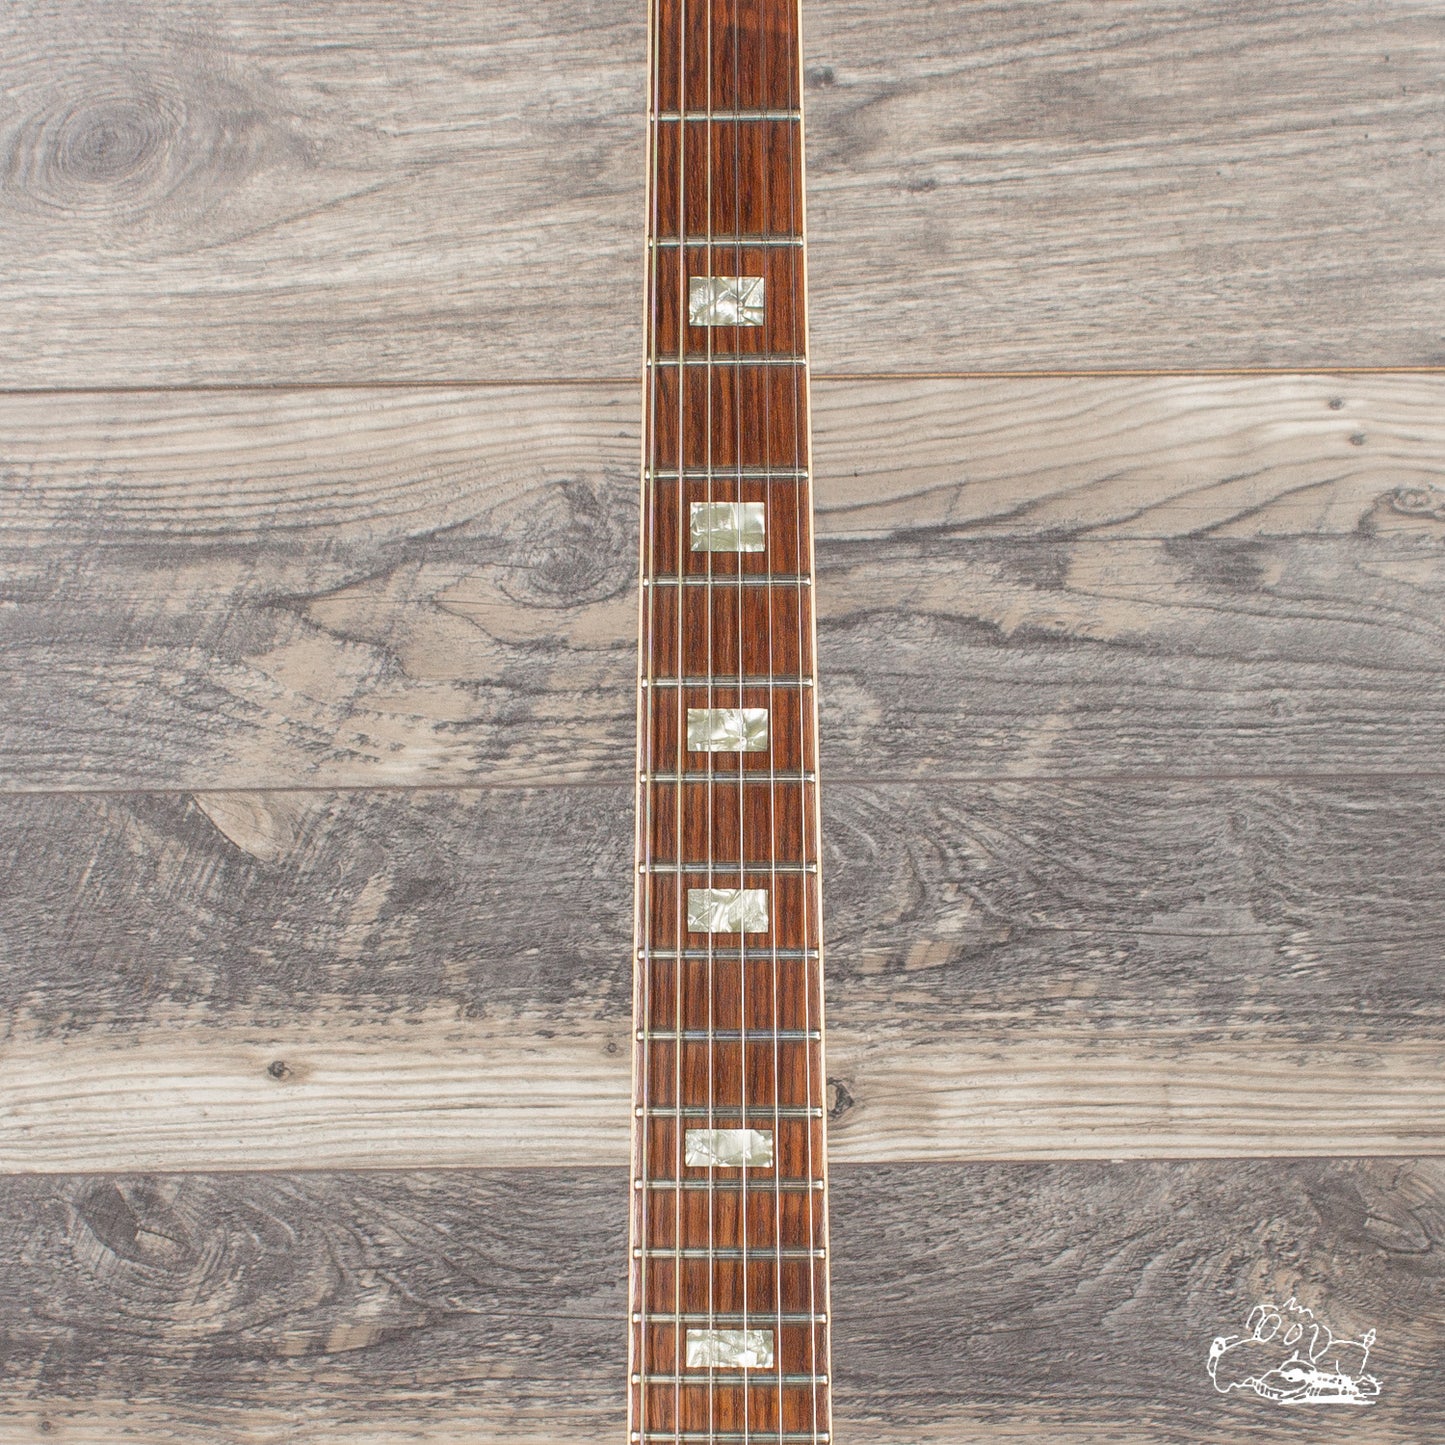 1967 Gibson ES-335